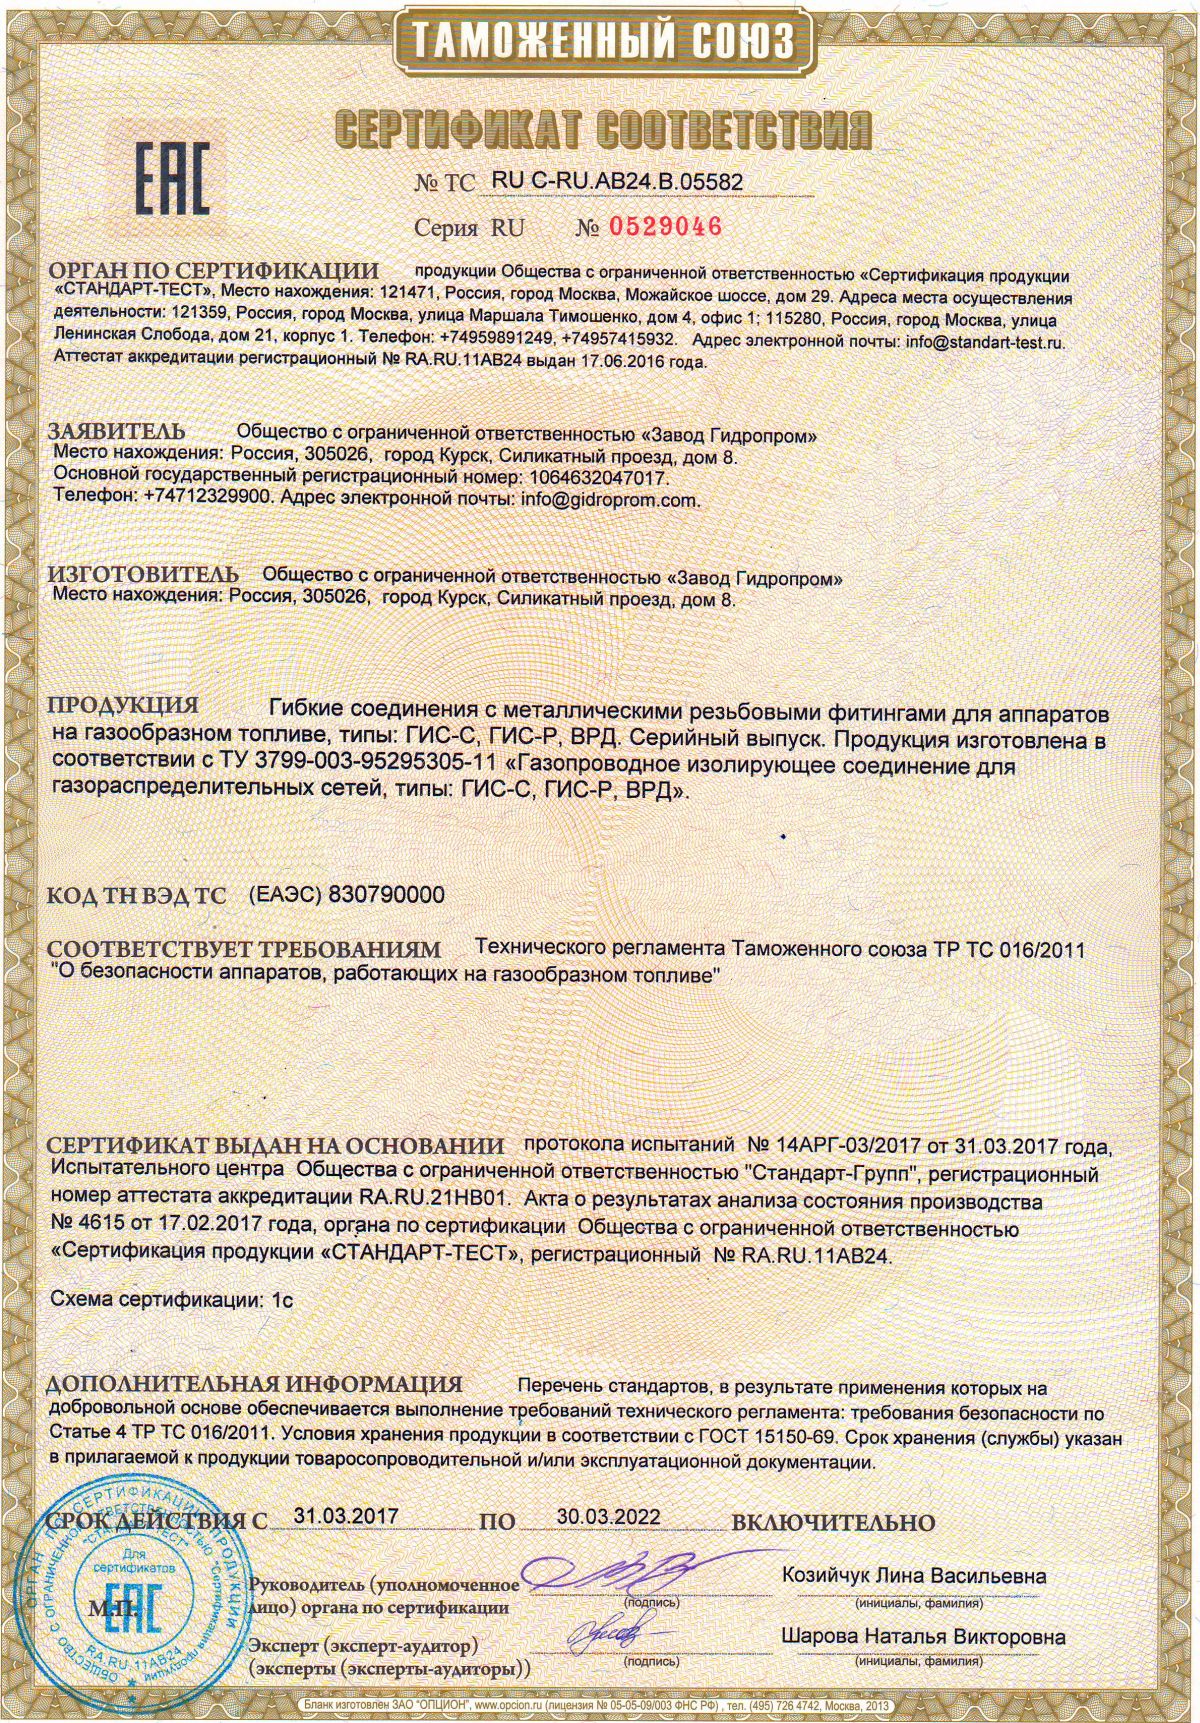 Сертификат Завода Гидропром